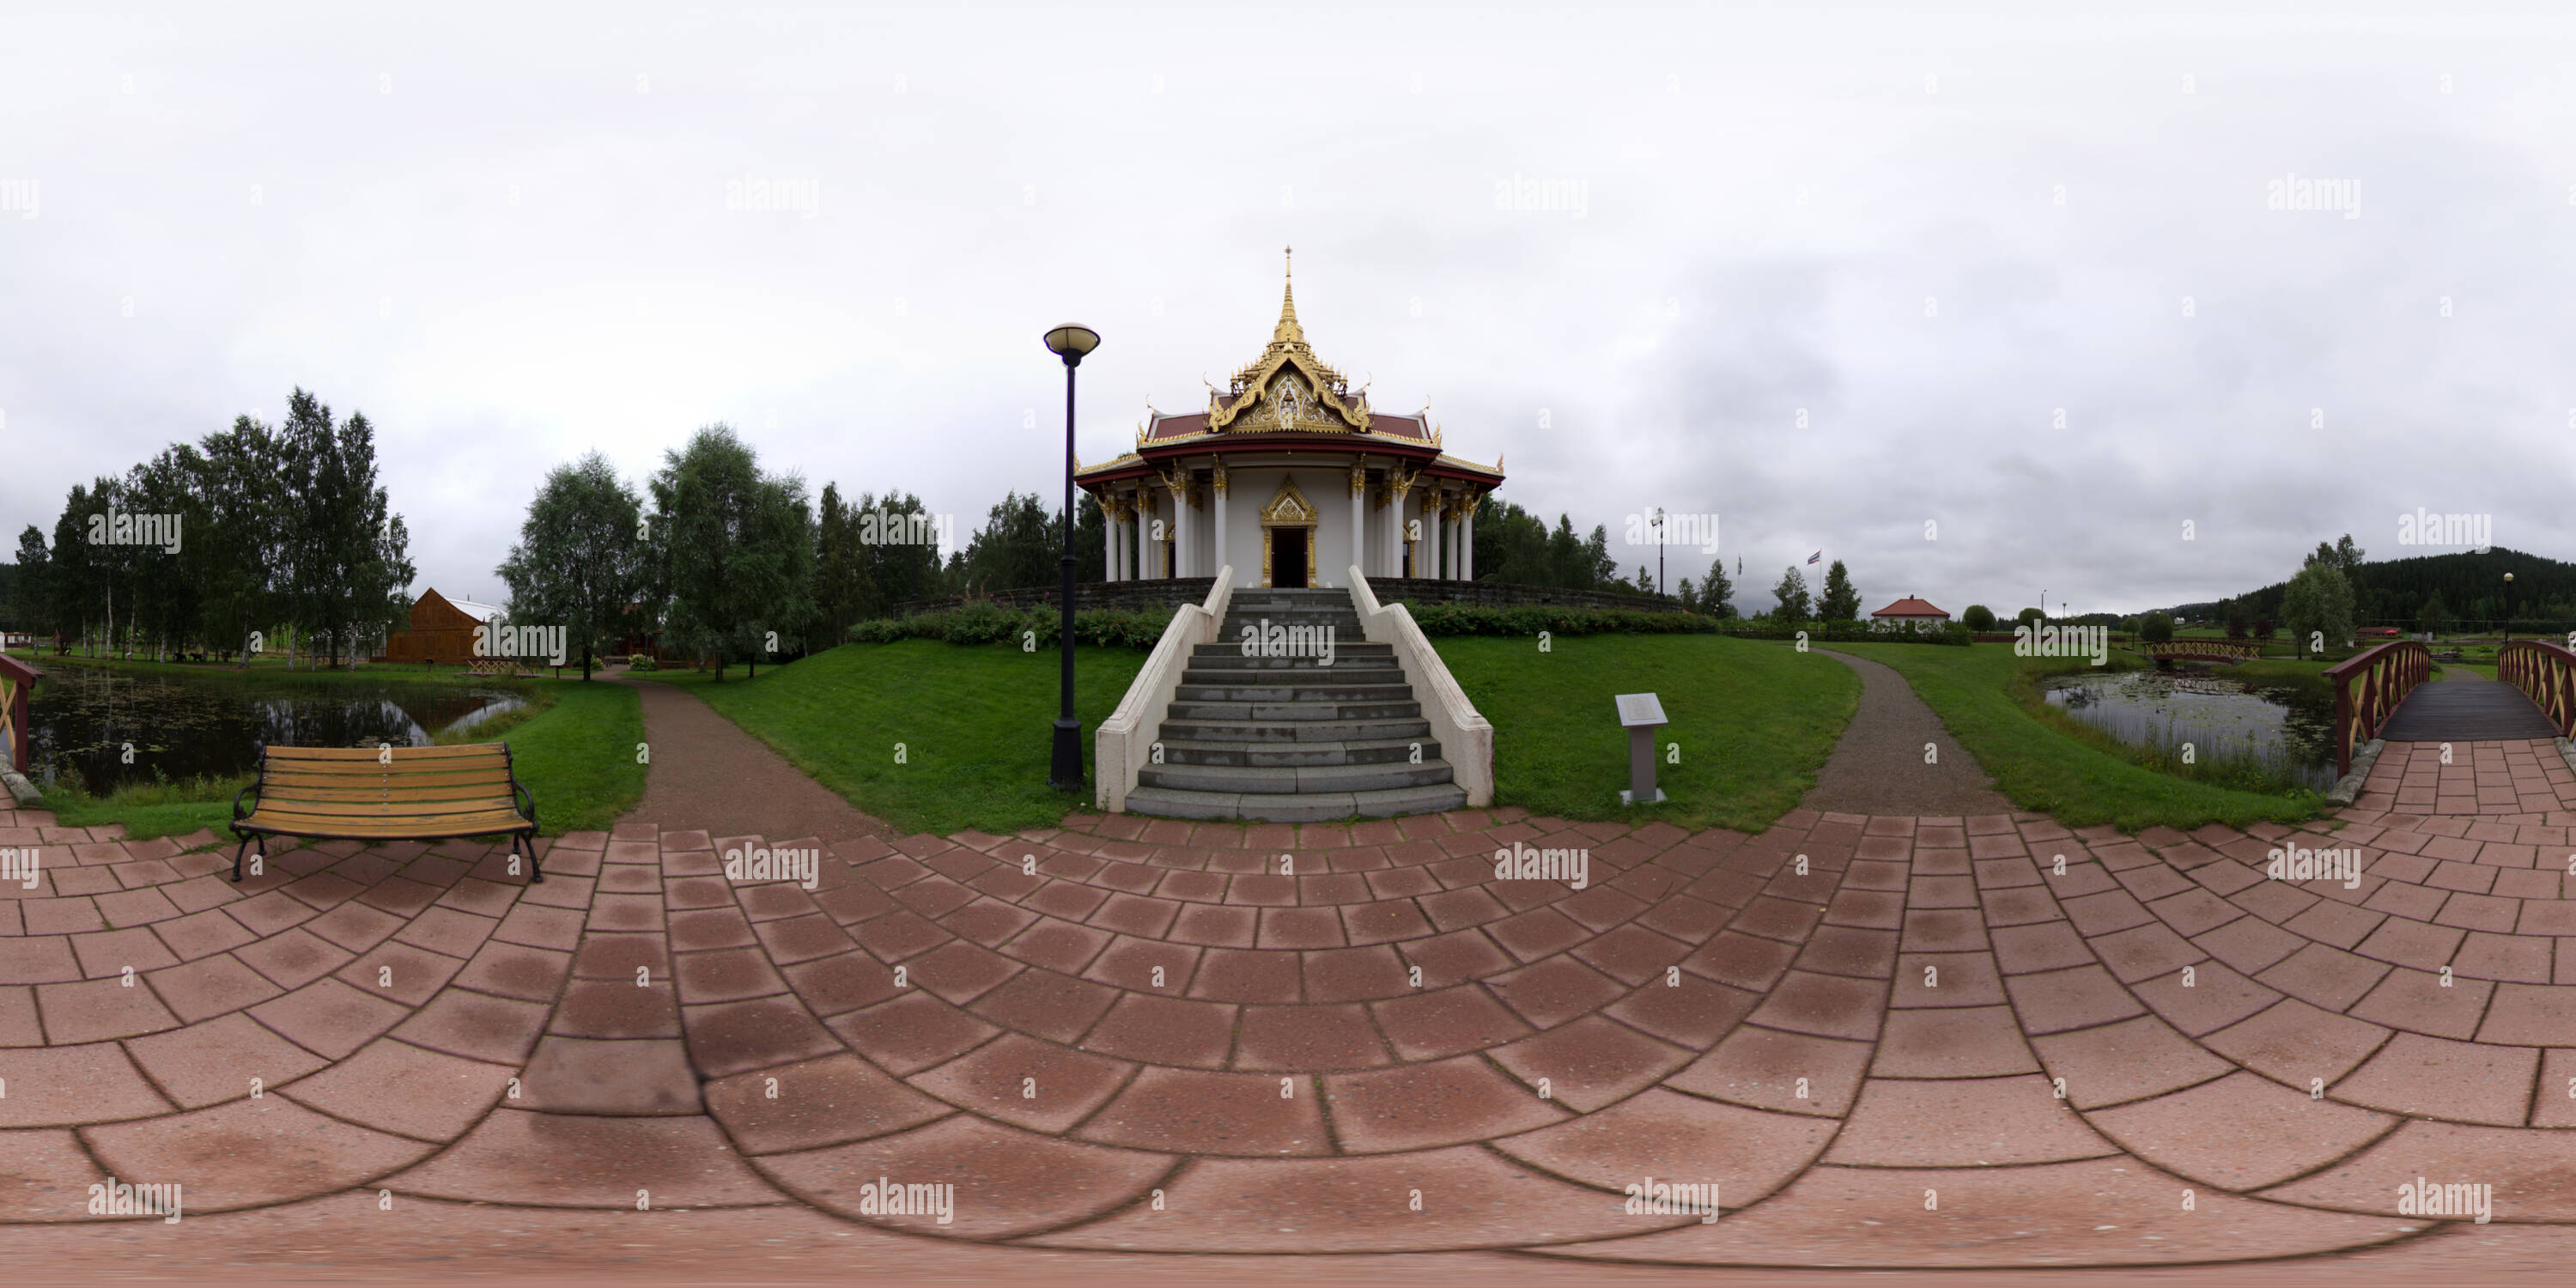 360 degree panoramic view of King Chulalongkorn Memorial at Ragunda